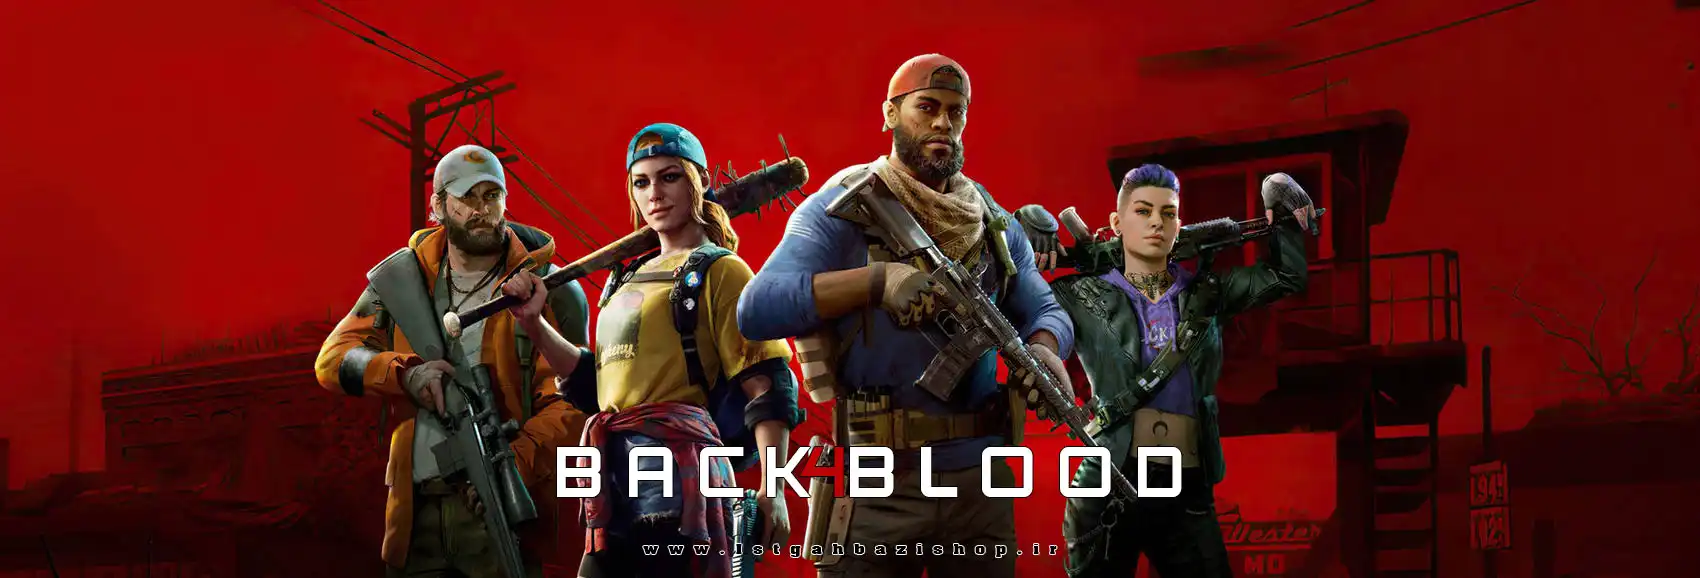 خرید بازی Back 4 Blood